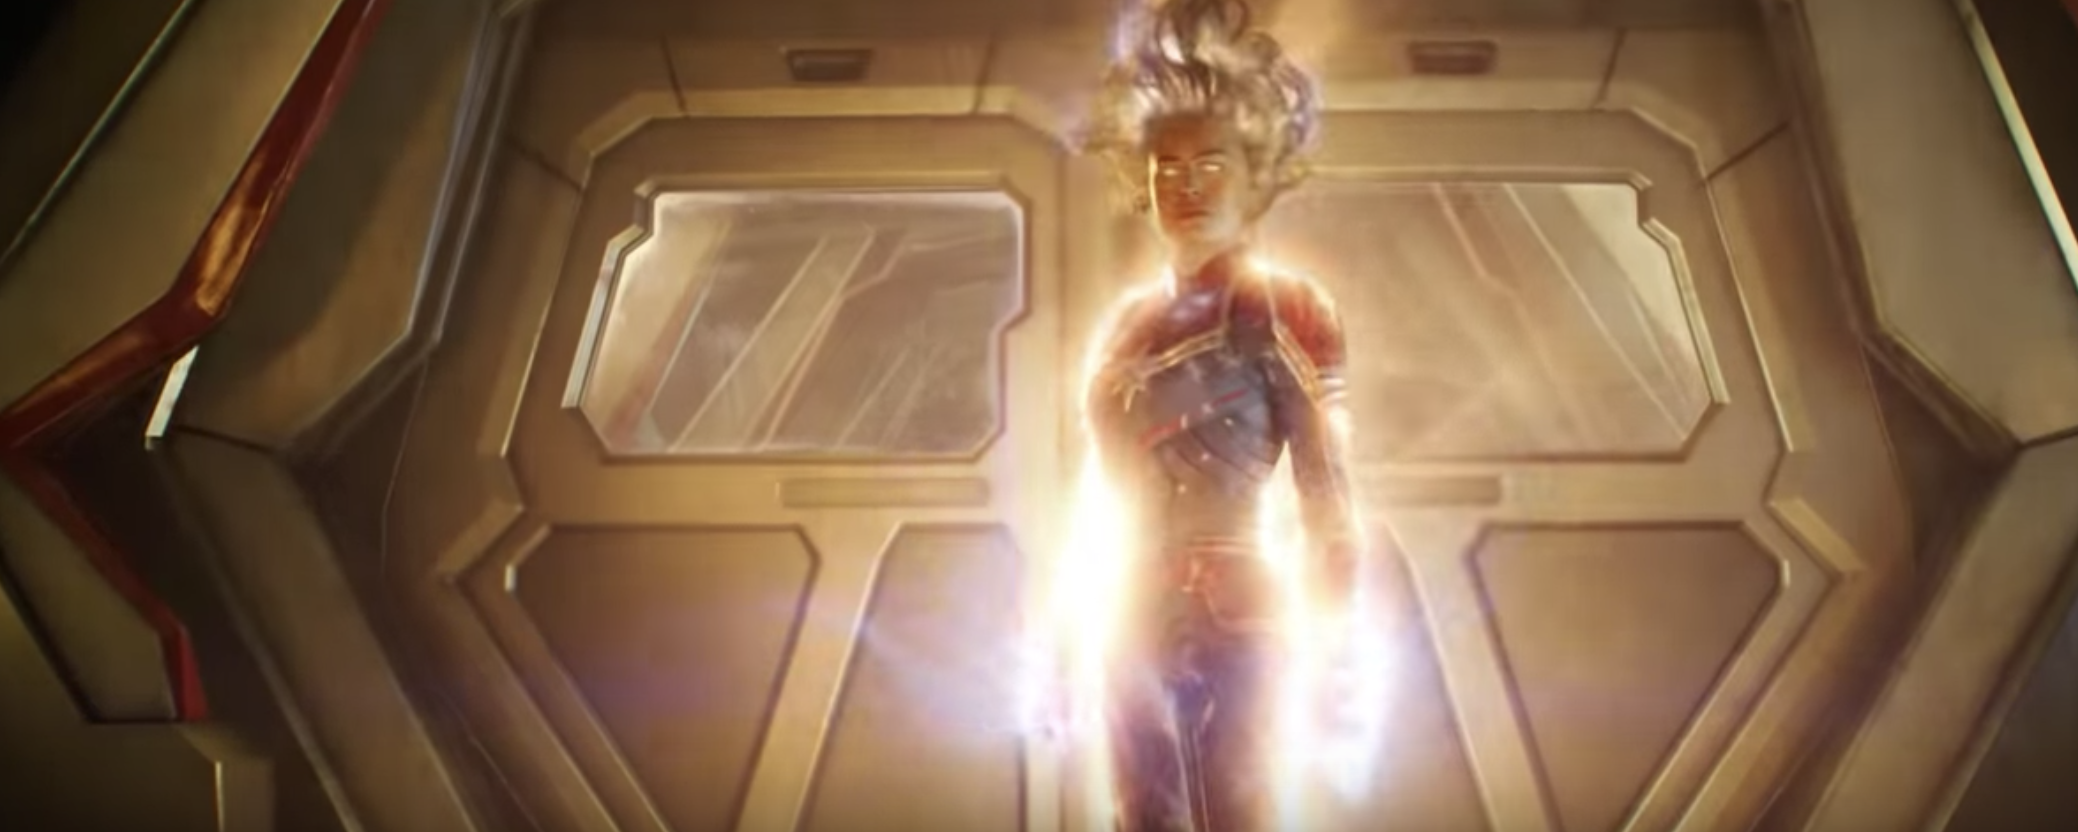 Brie Larson as Captain Marvel in Captain Marvel trailer